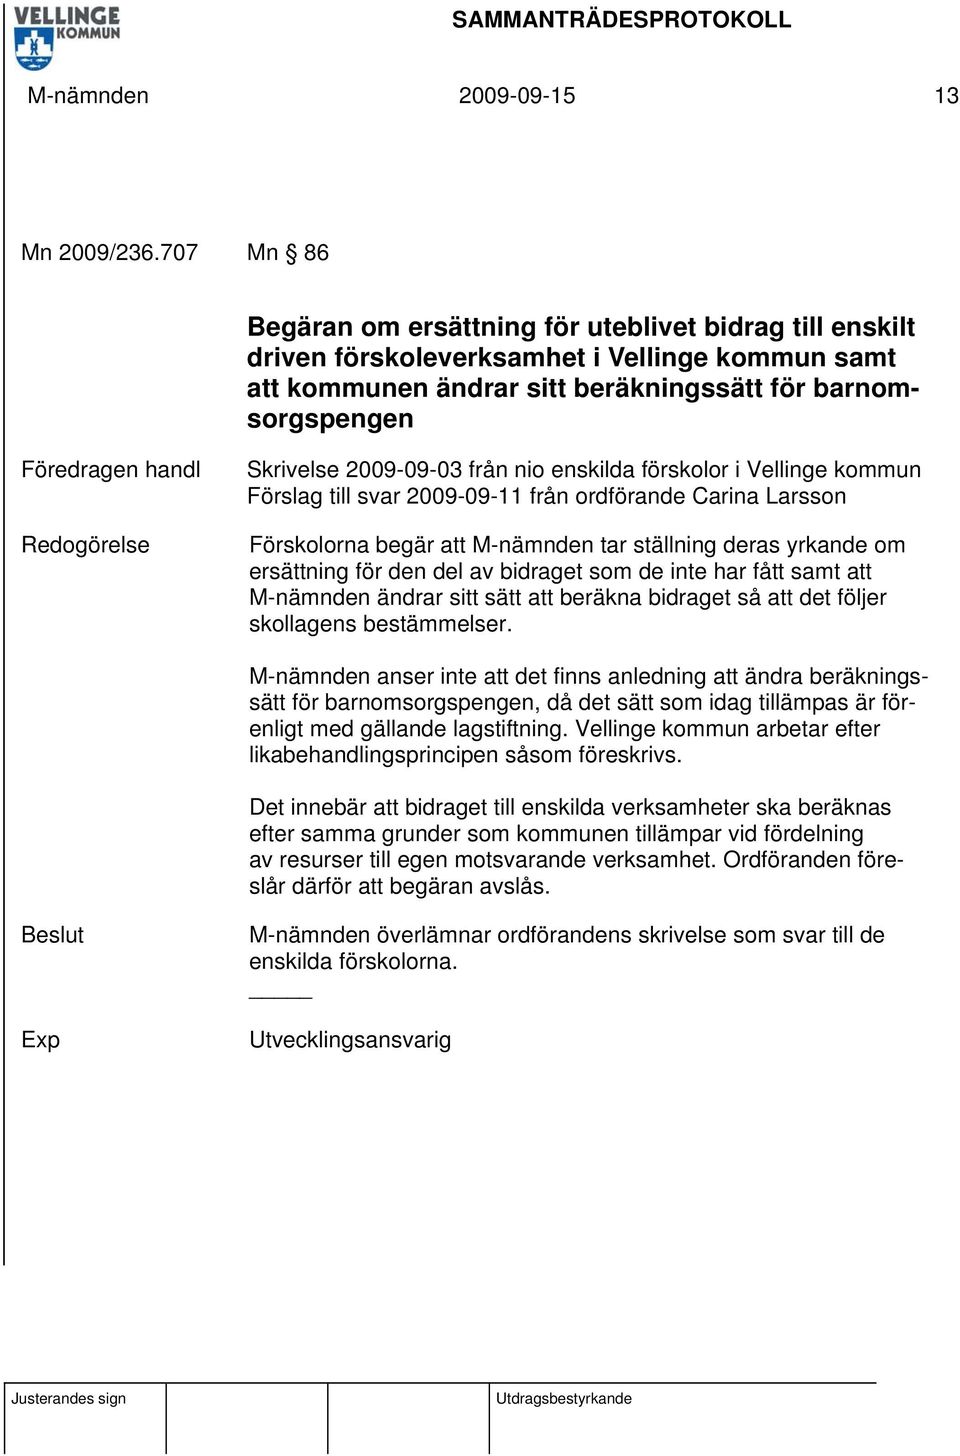 Redogörelse Skrivelse 2009-09-03 från nio enskilda förskolor i Vellinge kommun Förslag till svar 2009-09-11 från ordförande Carina Larsson Förskolorna begär att M-nämnden tar ställning deras yrkande